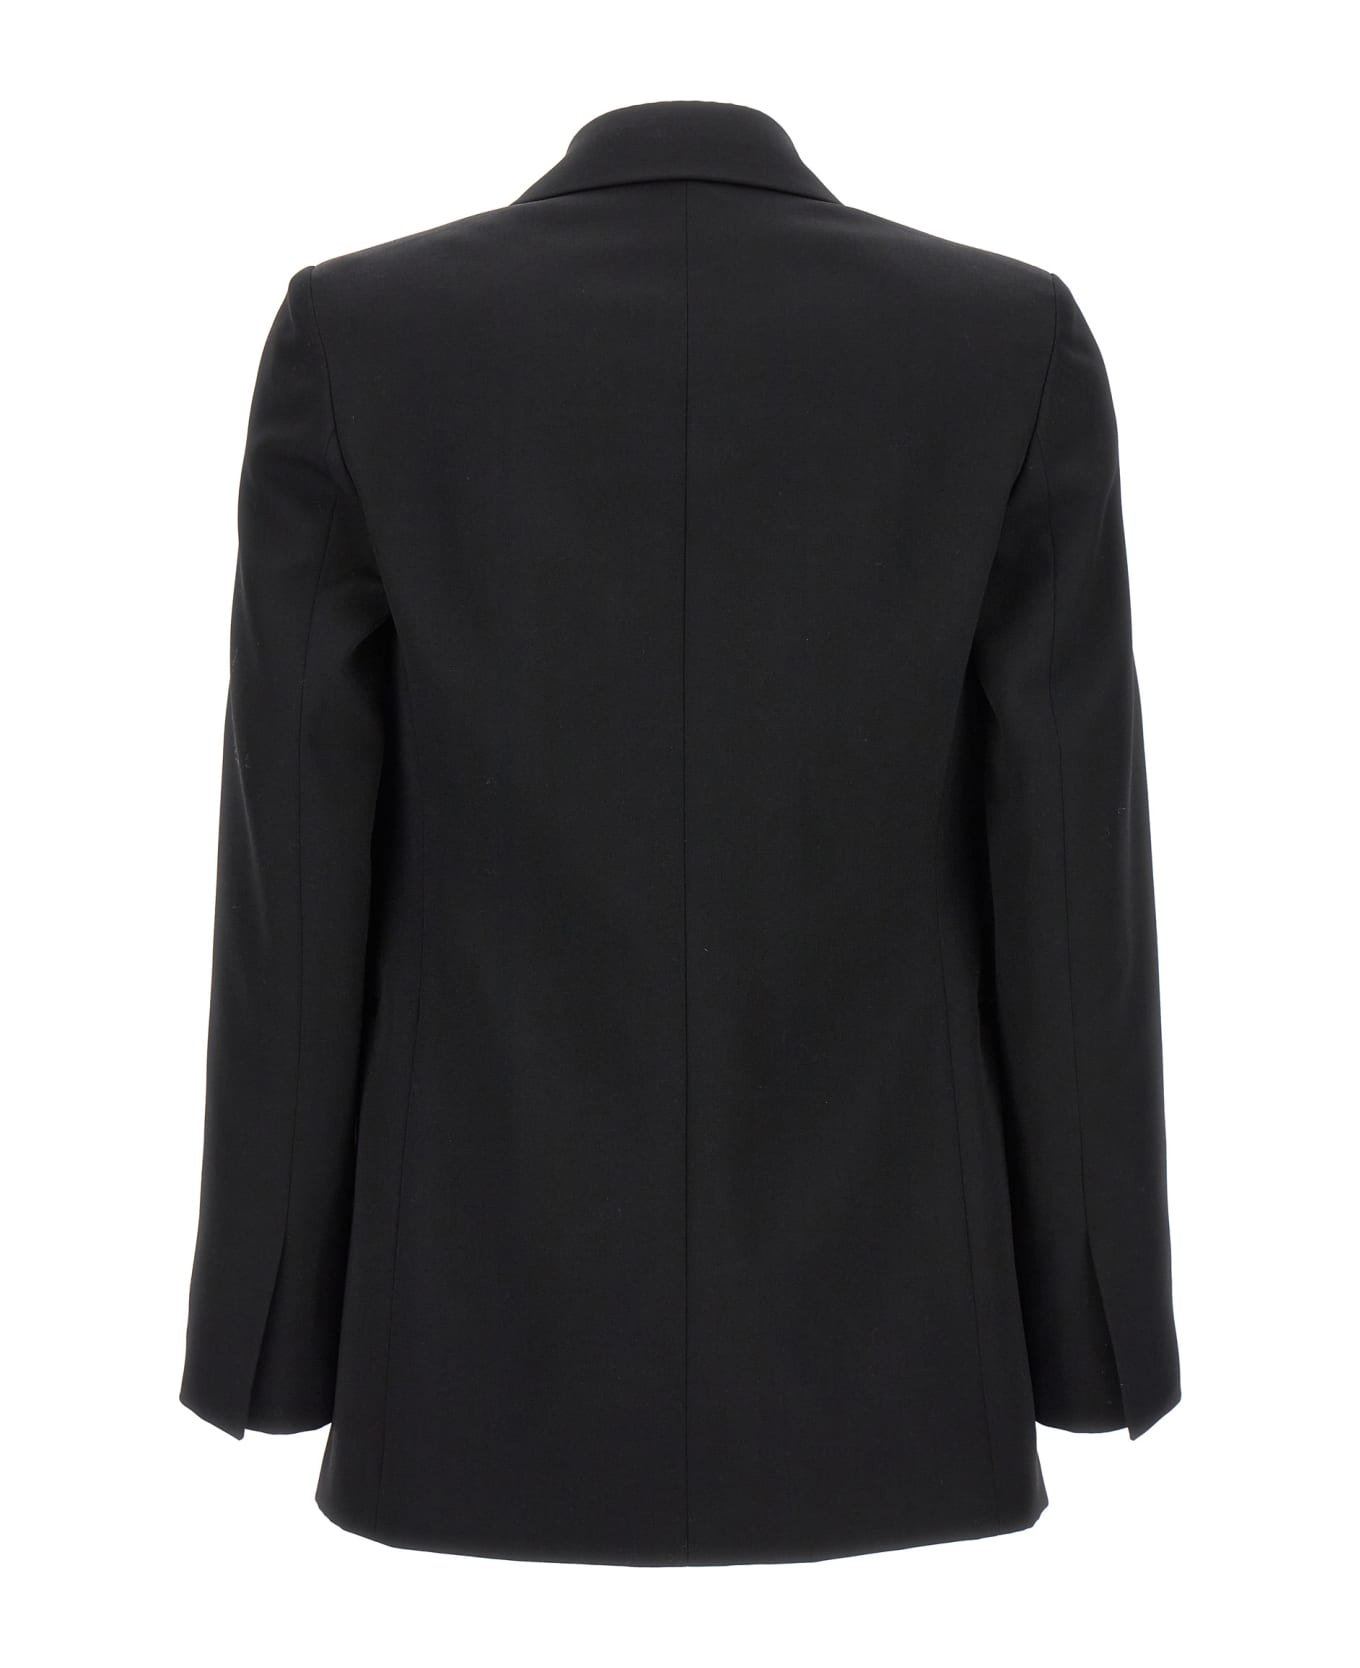 Lanvin Double Breast Jewel Buttons Blazer Jacket - Black  